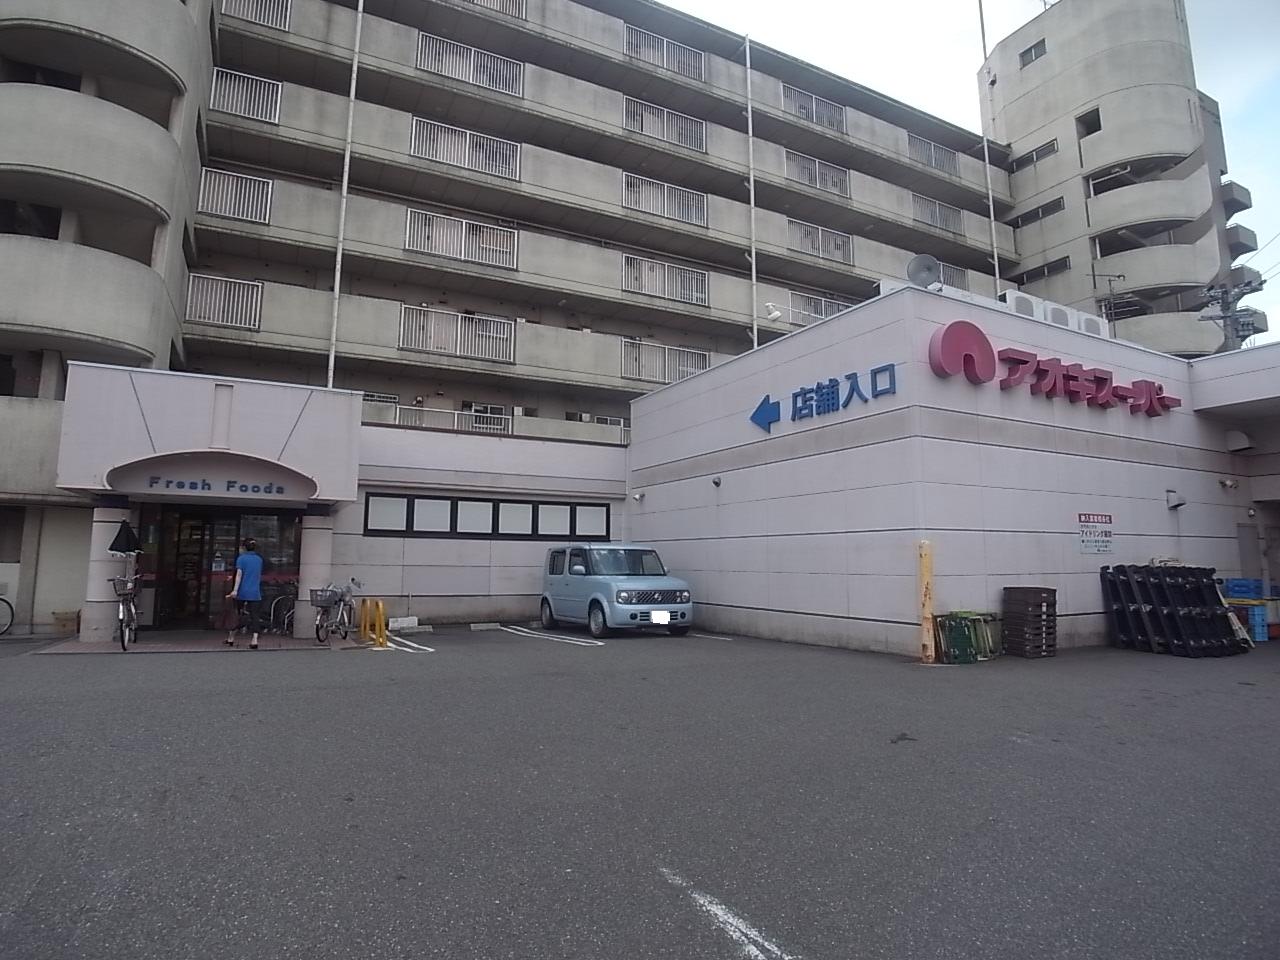 Supermarket. Aoki Super Karasumori store up to (super) 238m